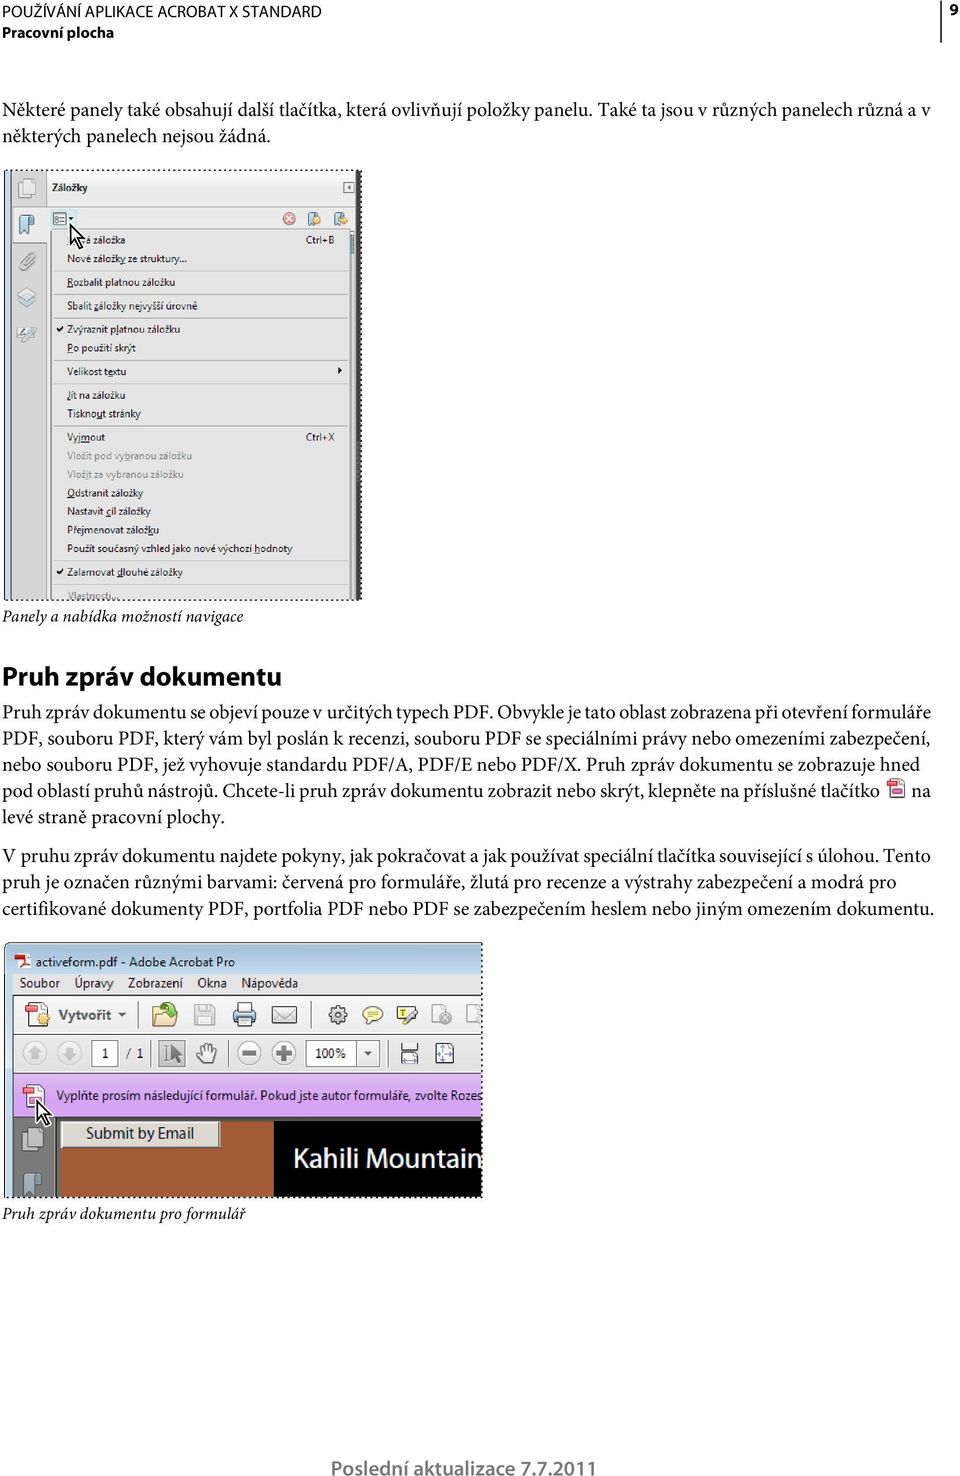 Používání aplikace ADOBE ACROBAT X STANDARD - PDF Stažení zdarma